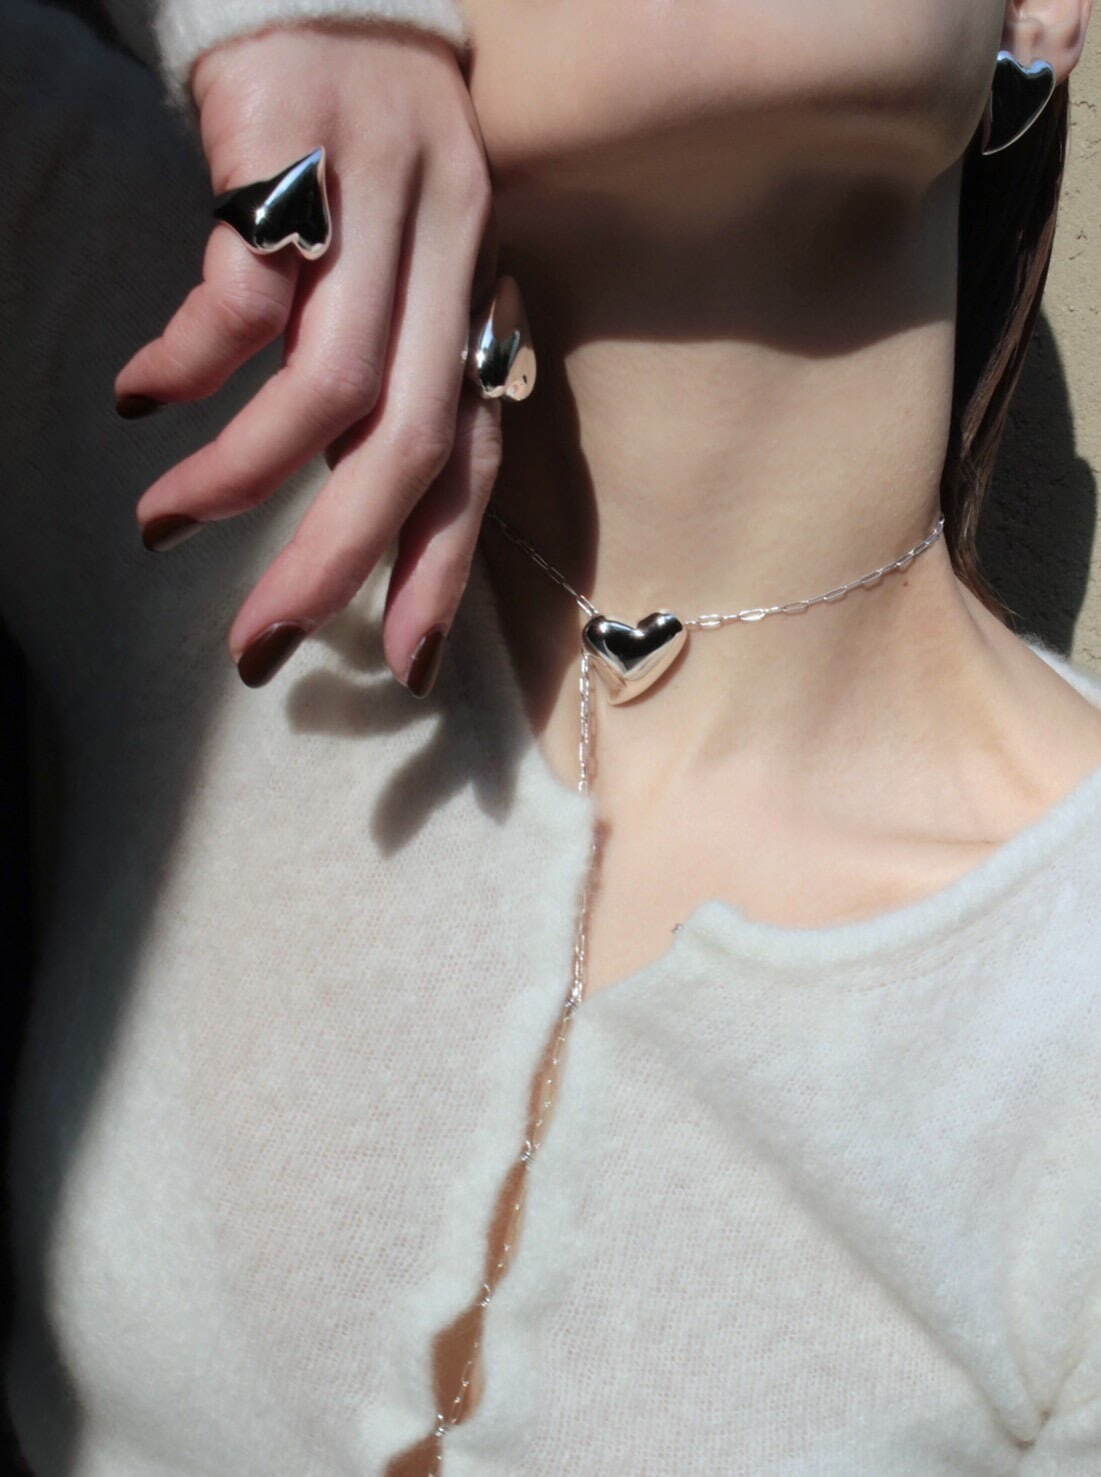 左から)Heart ring 14,300円、Heart necklace 15,400円
カラー マットシルバー